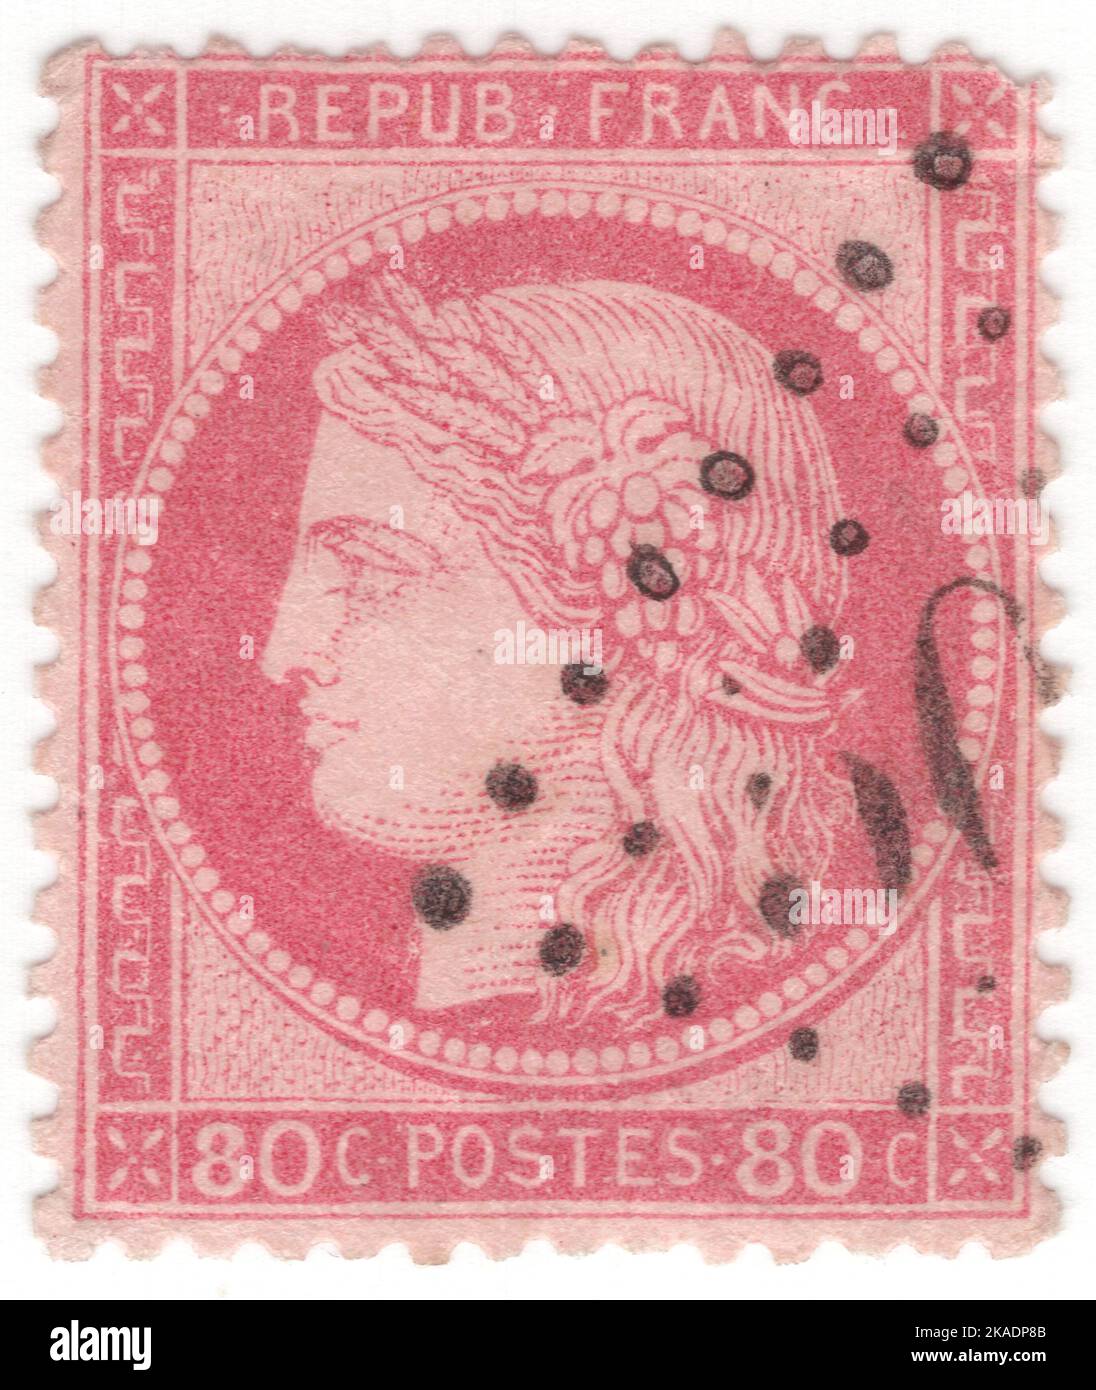 FRANCIA - 1872: Una rosa di 80 centesimi su francobollo di Pinkish che raffigura Ceres — Dea dell'agricoltura, della fertilità, dei grani, del raccolto, della maternità, la terra, e coltivò raccolti Foto Stock